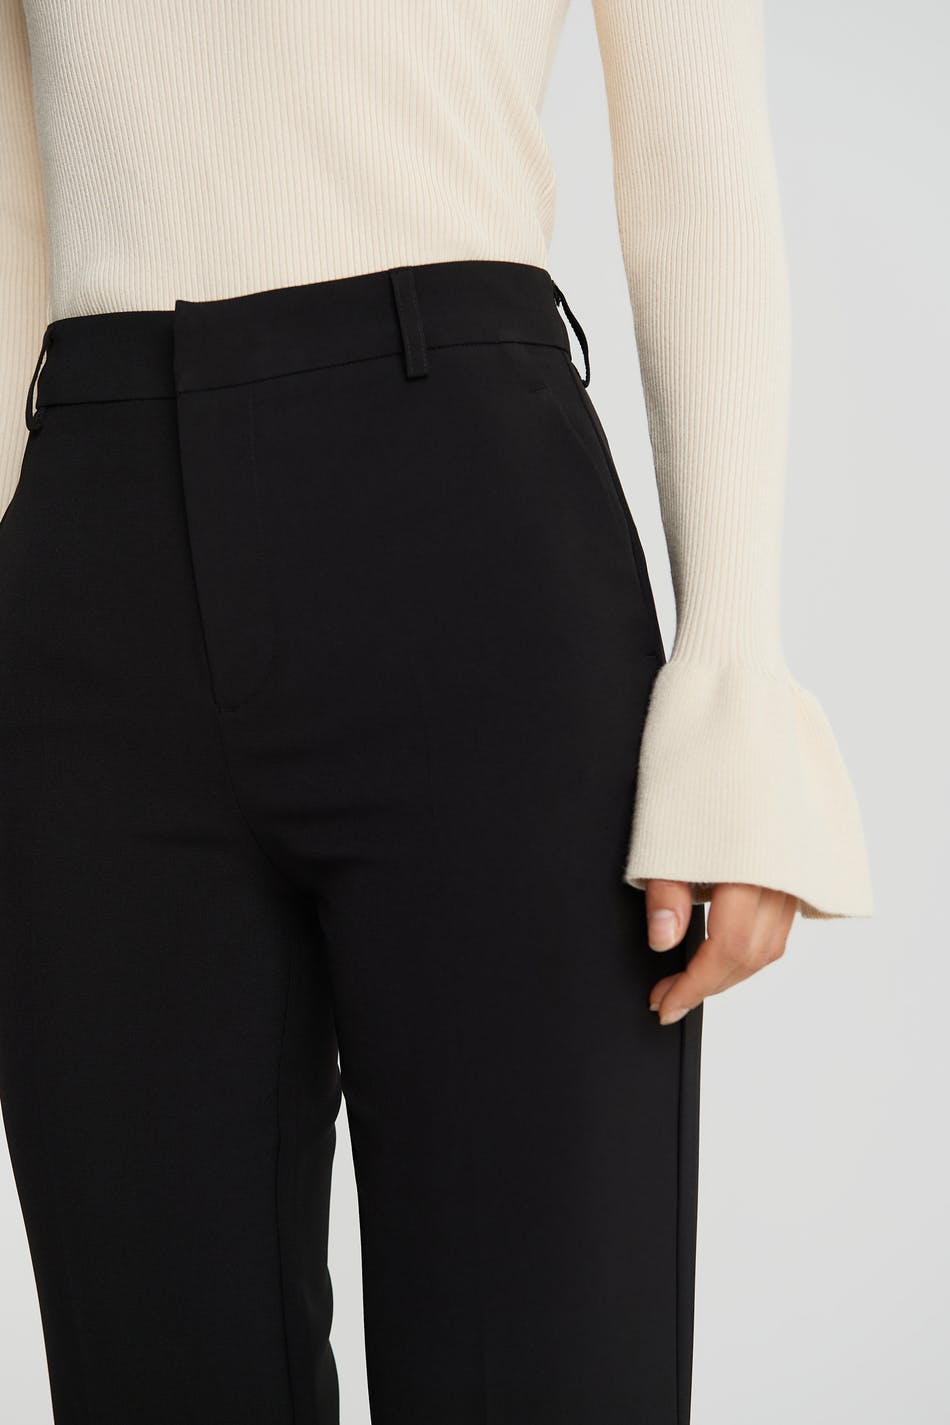 Women's High Waist Wide Leg Pants Long Trousers Tall XS - Walmart.com